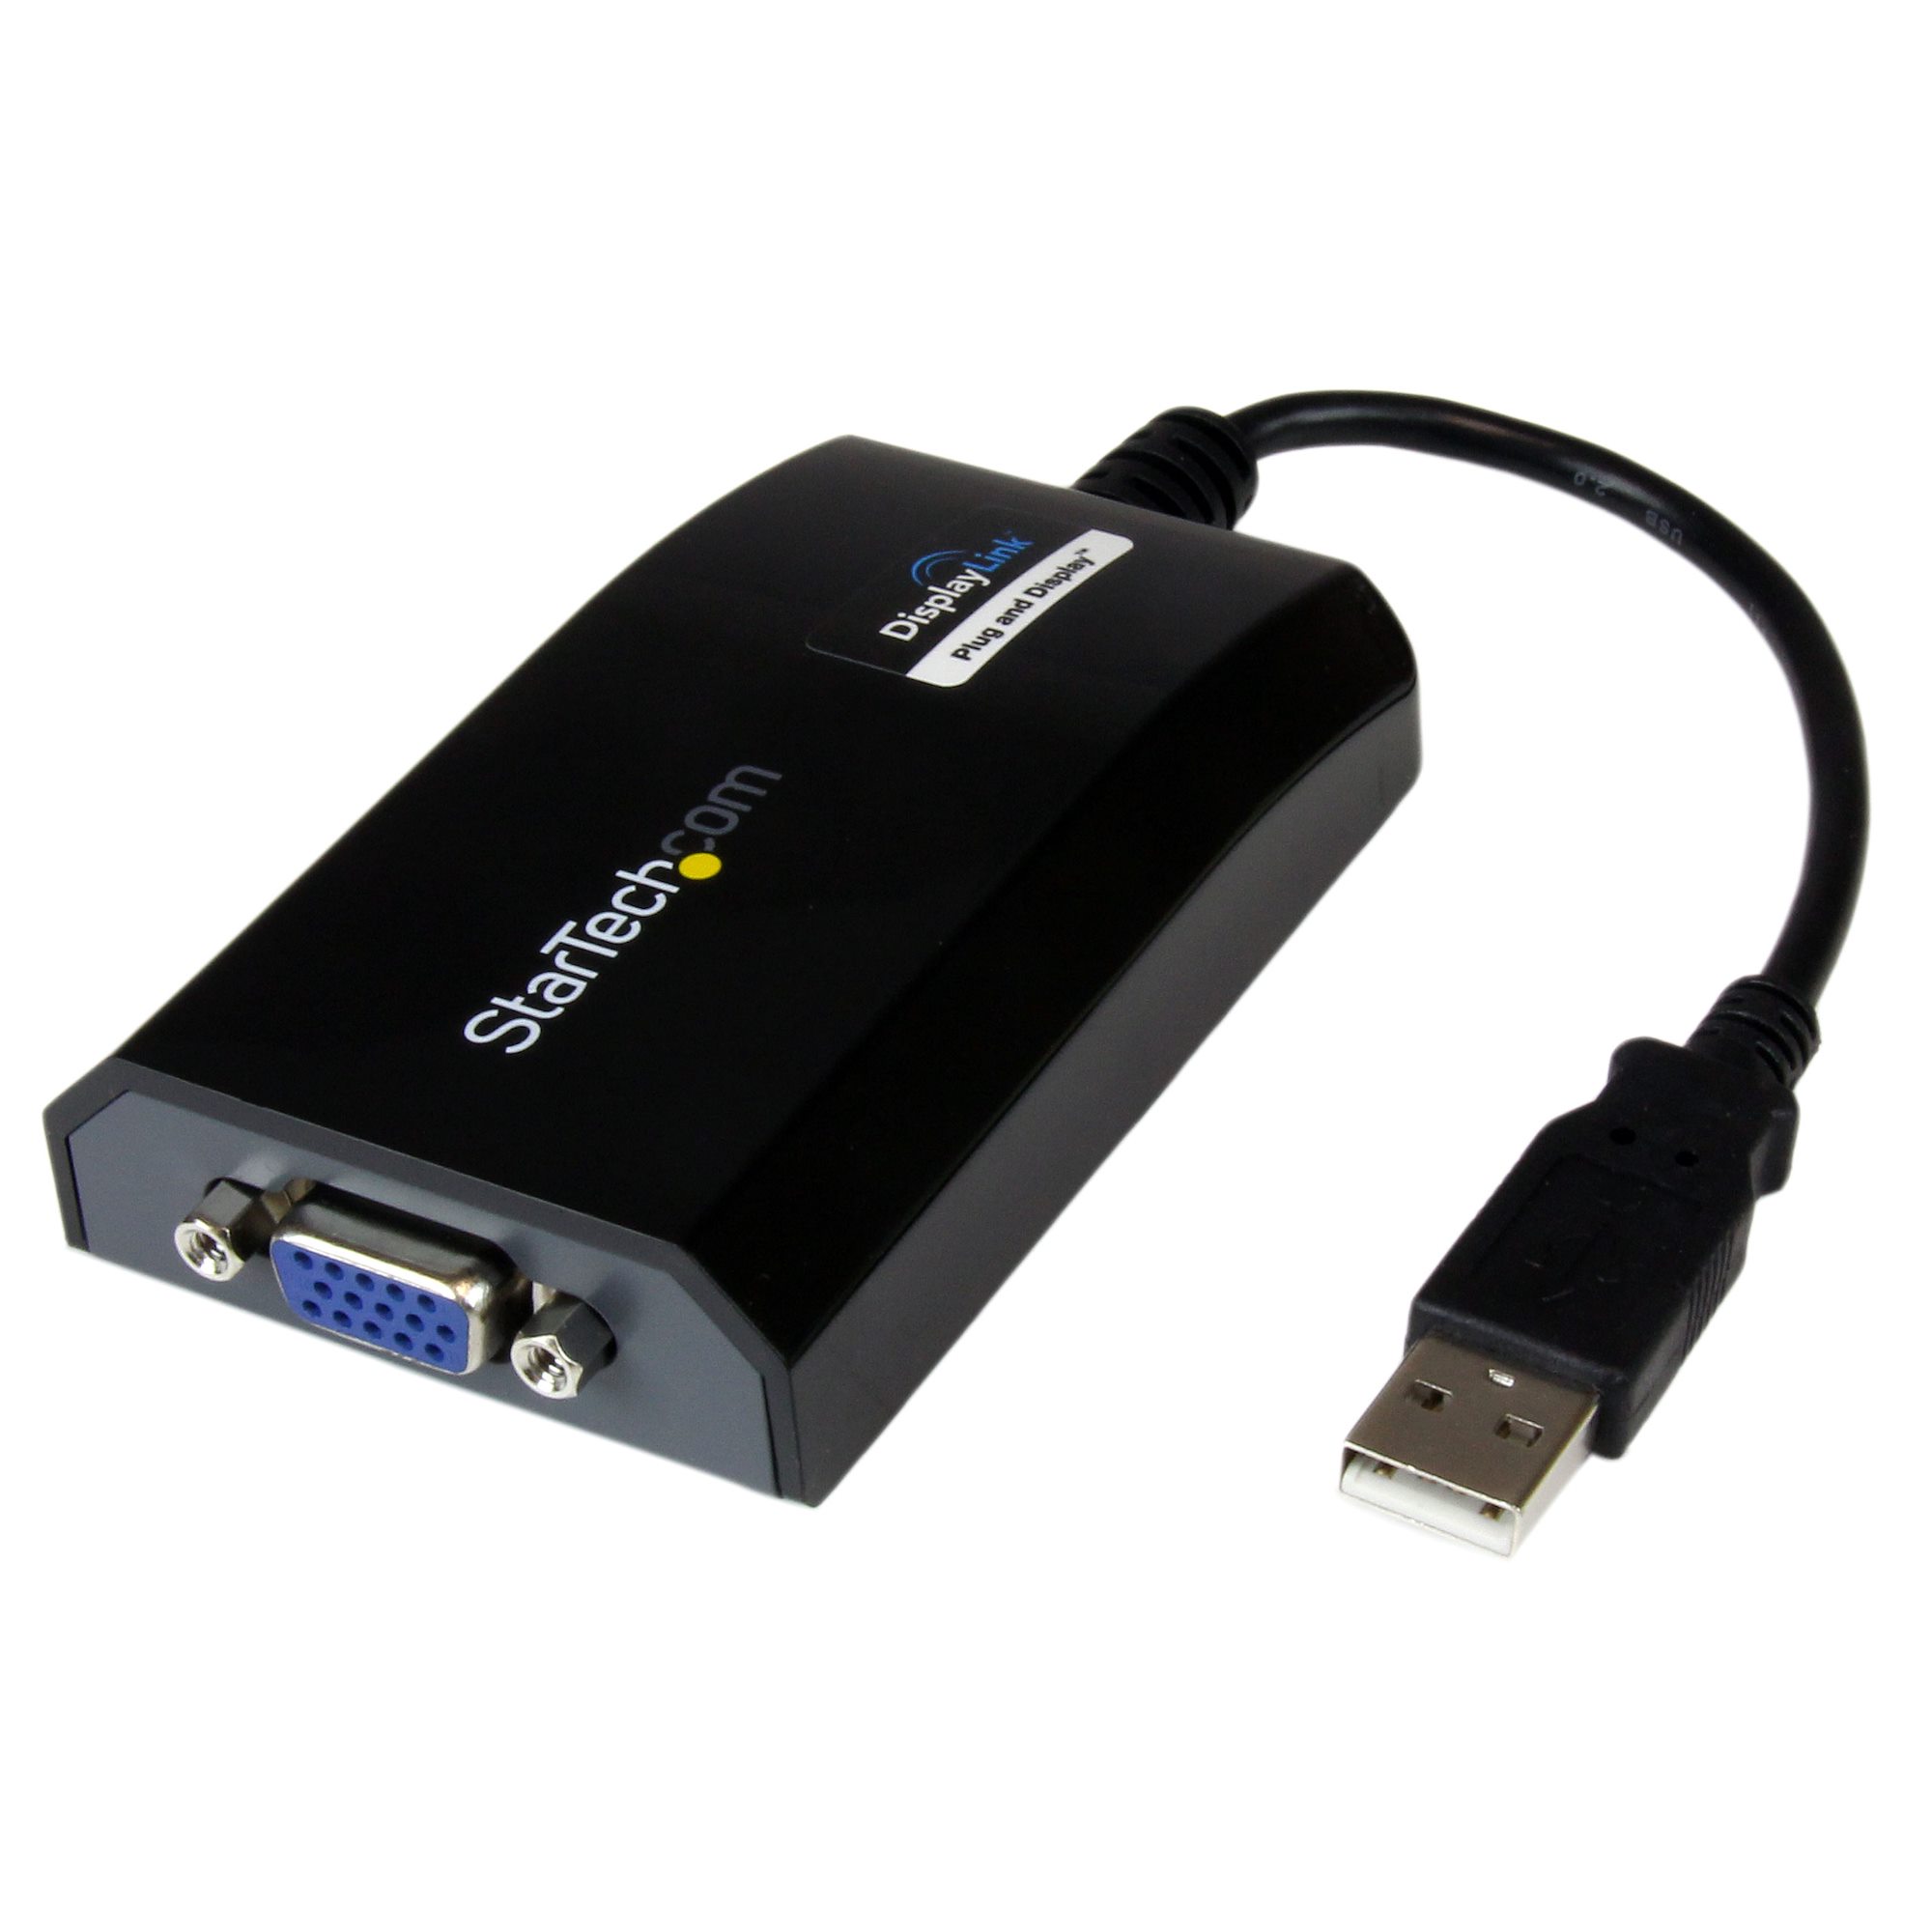 USB - VGA変換アダプタ USB接続外付けグラフィックアダプタ MAC対応 - USBビデオアダプタ | 日本